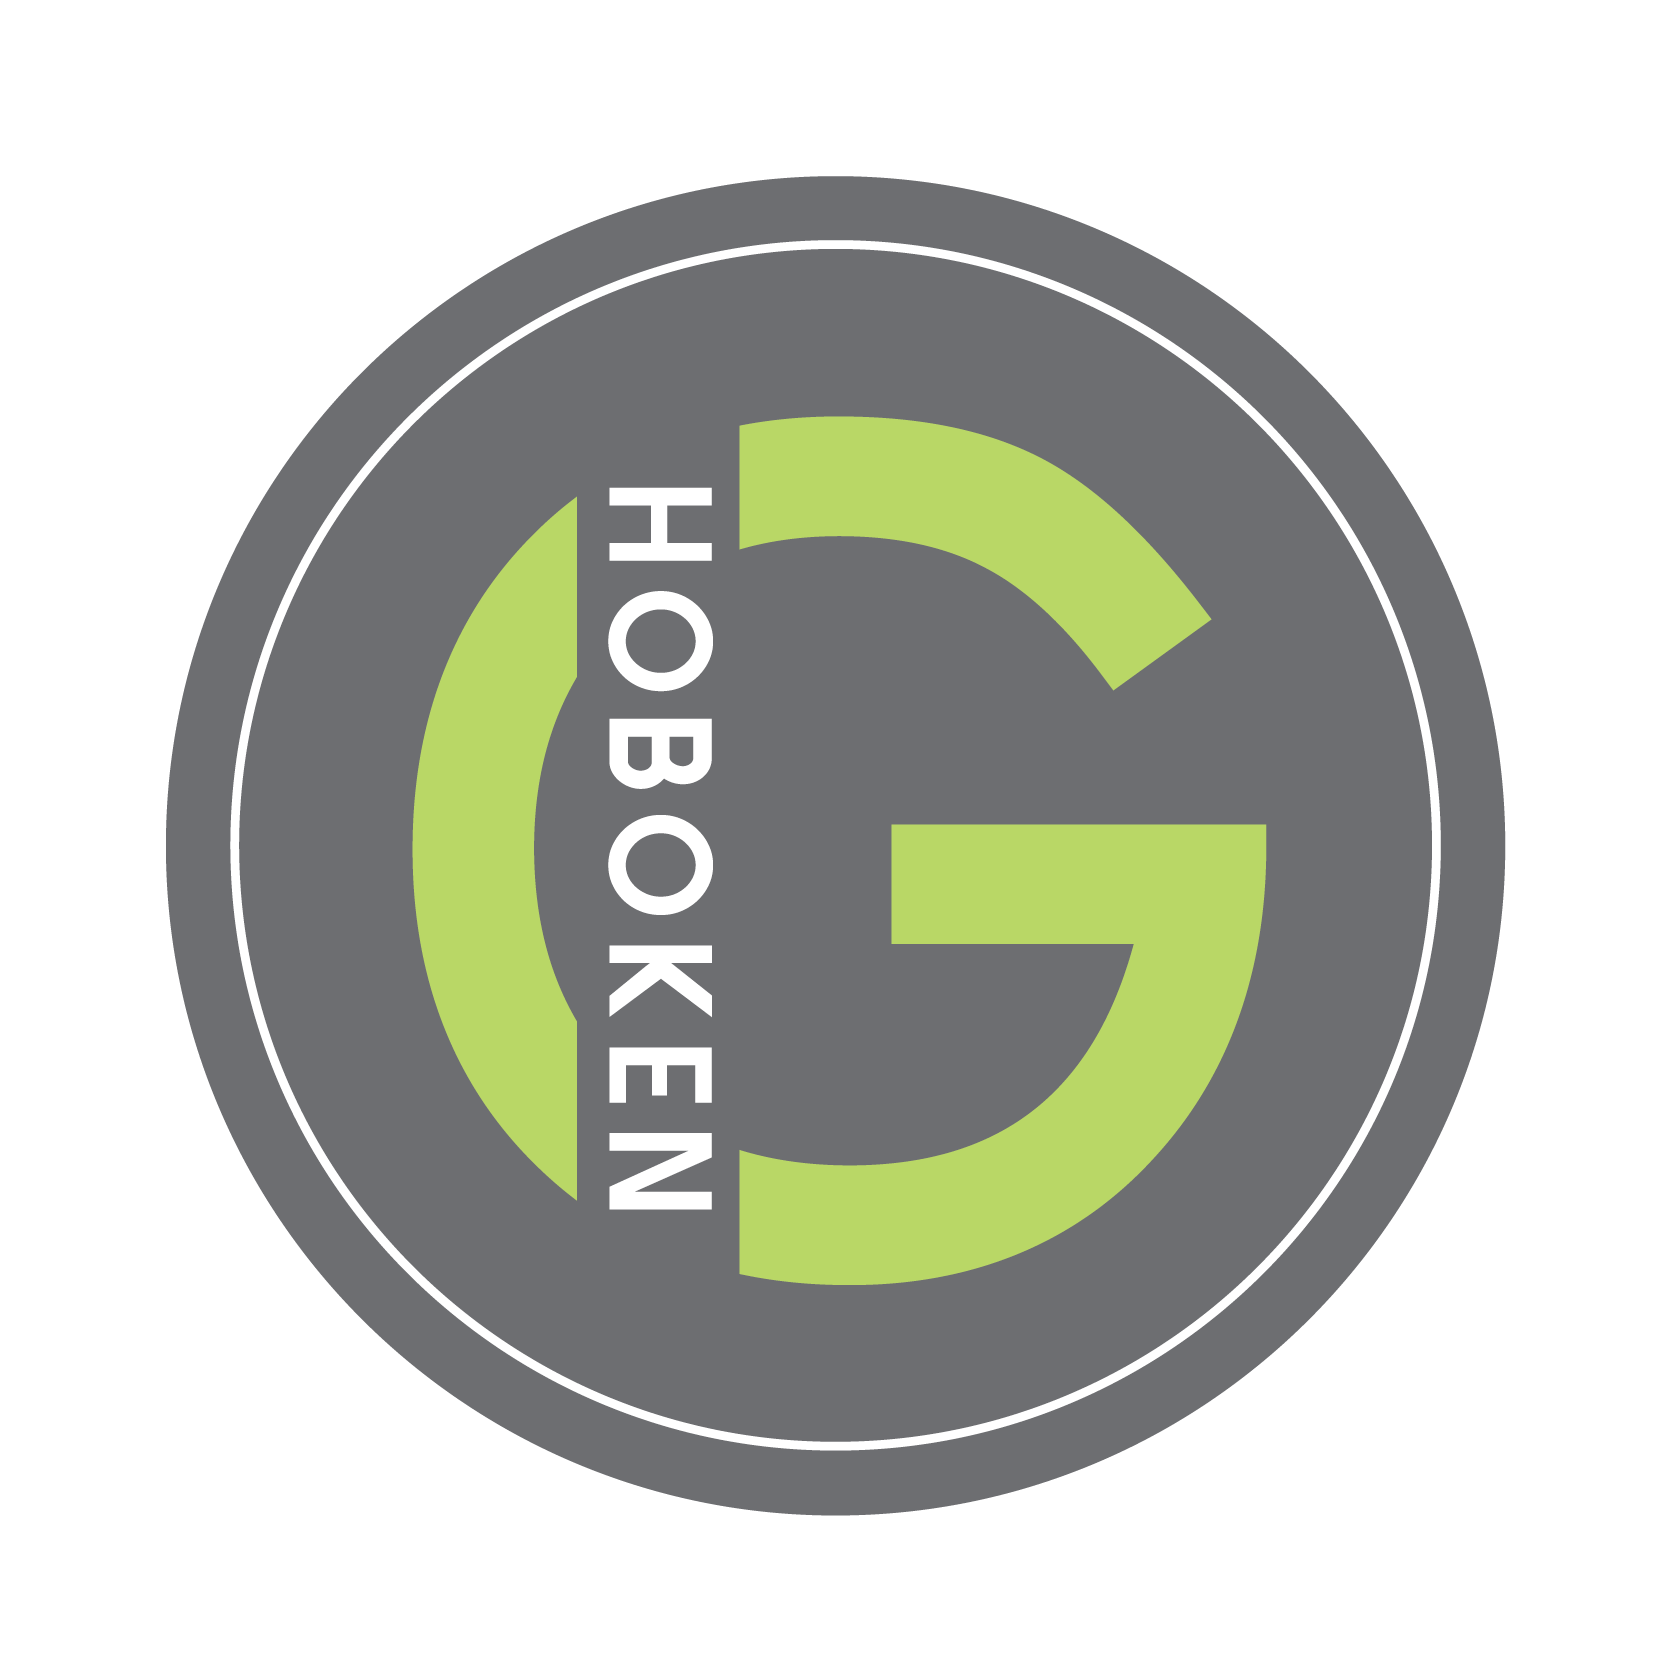 hoboken girl logo